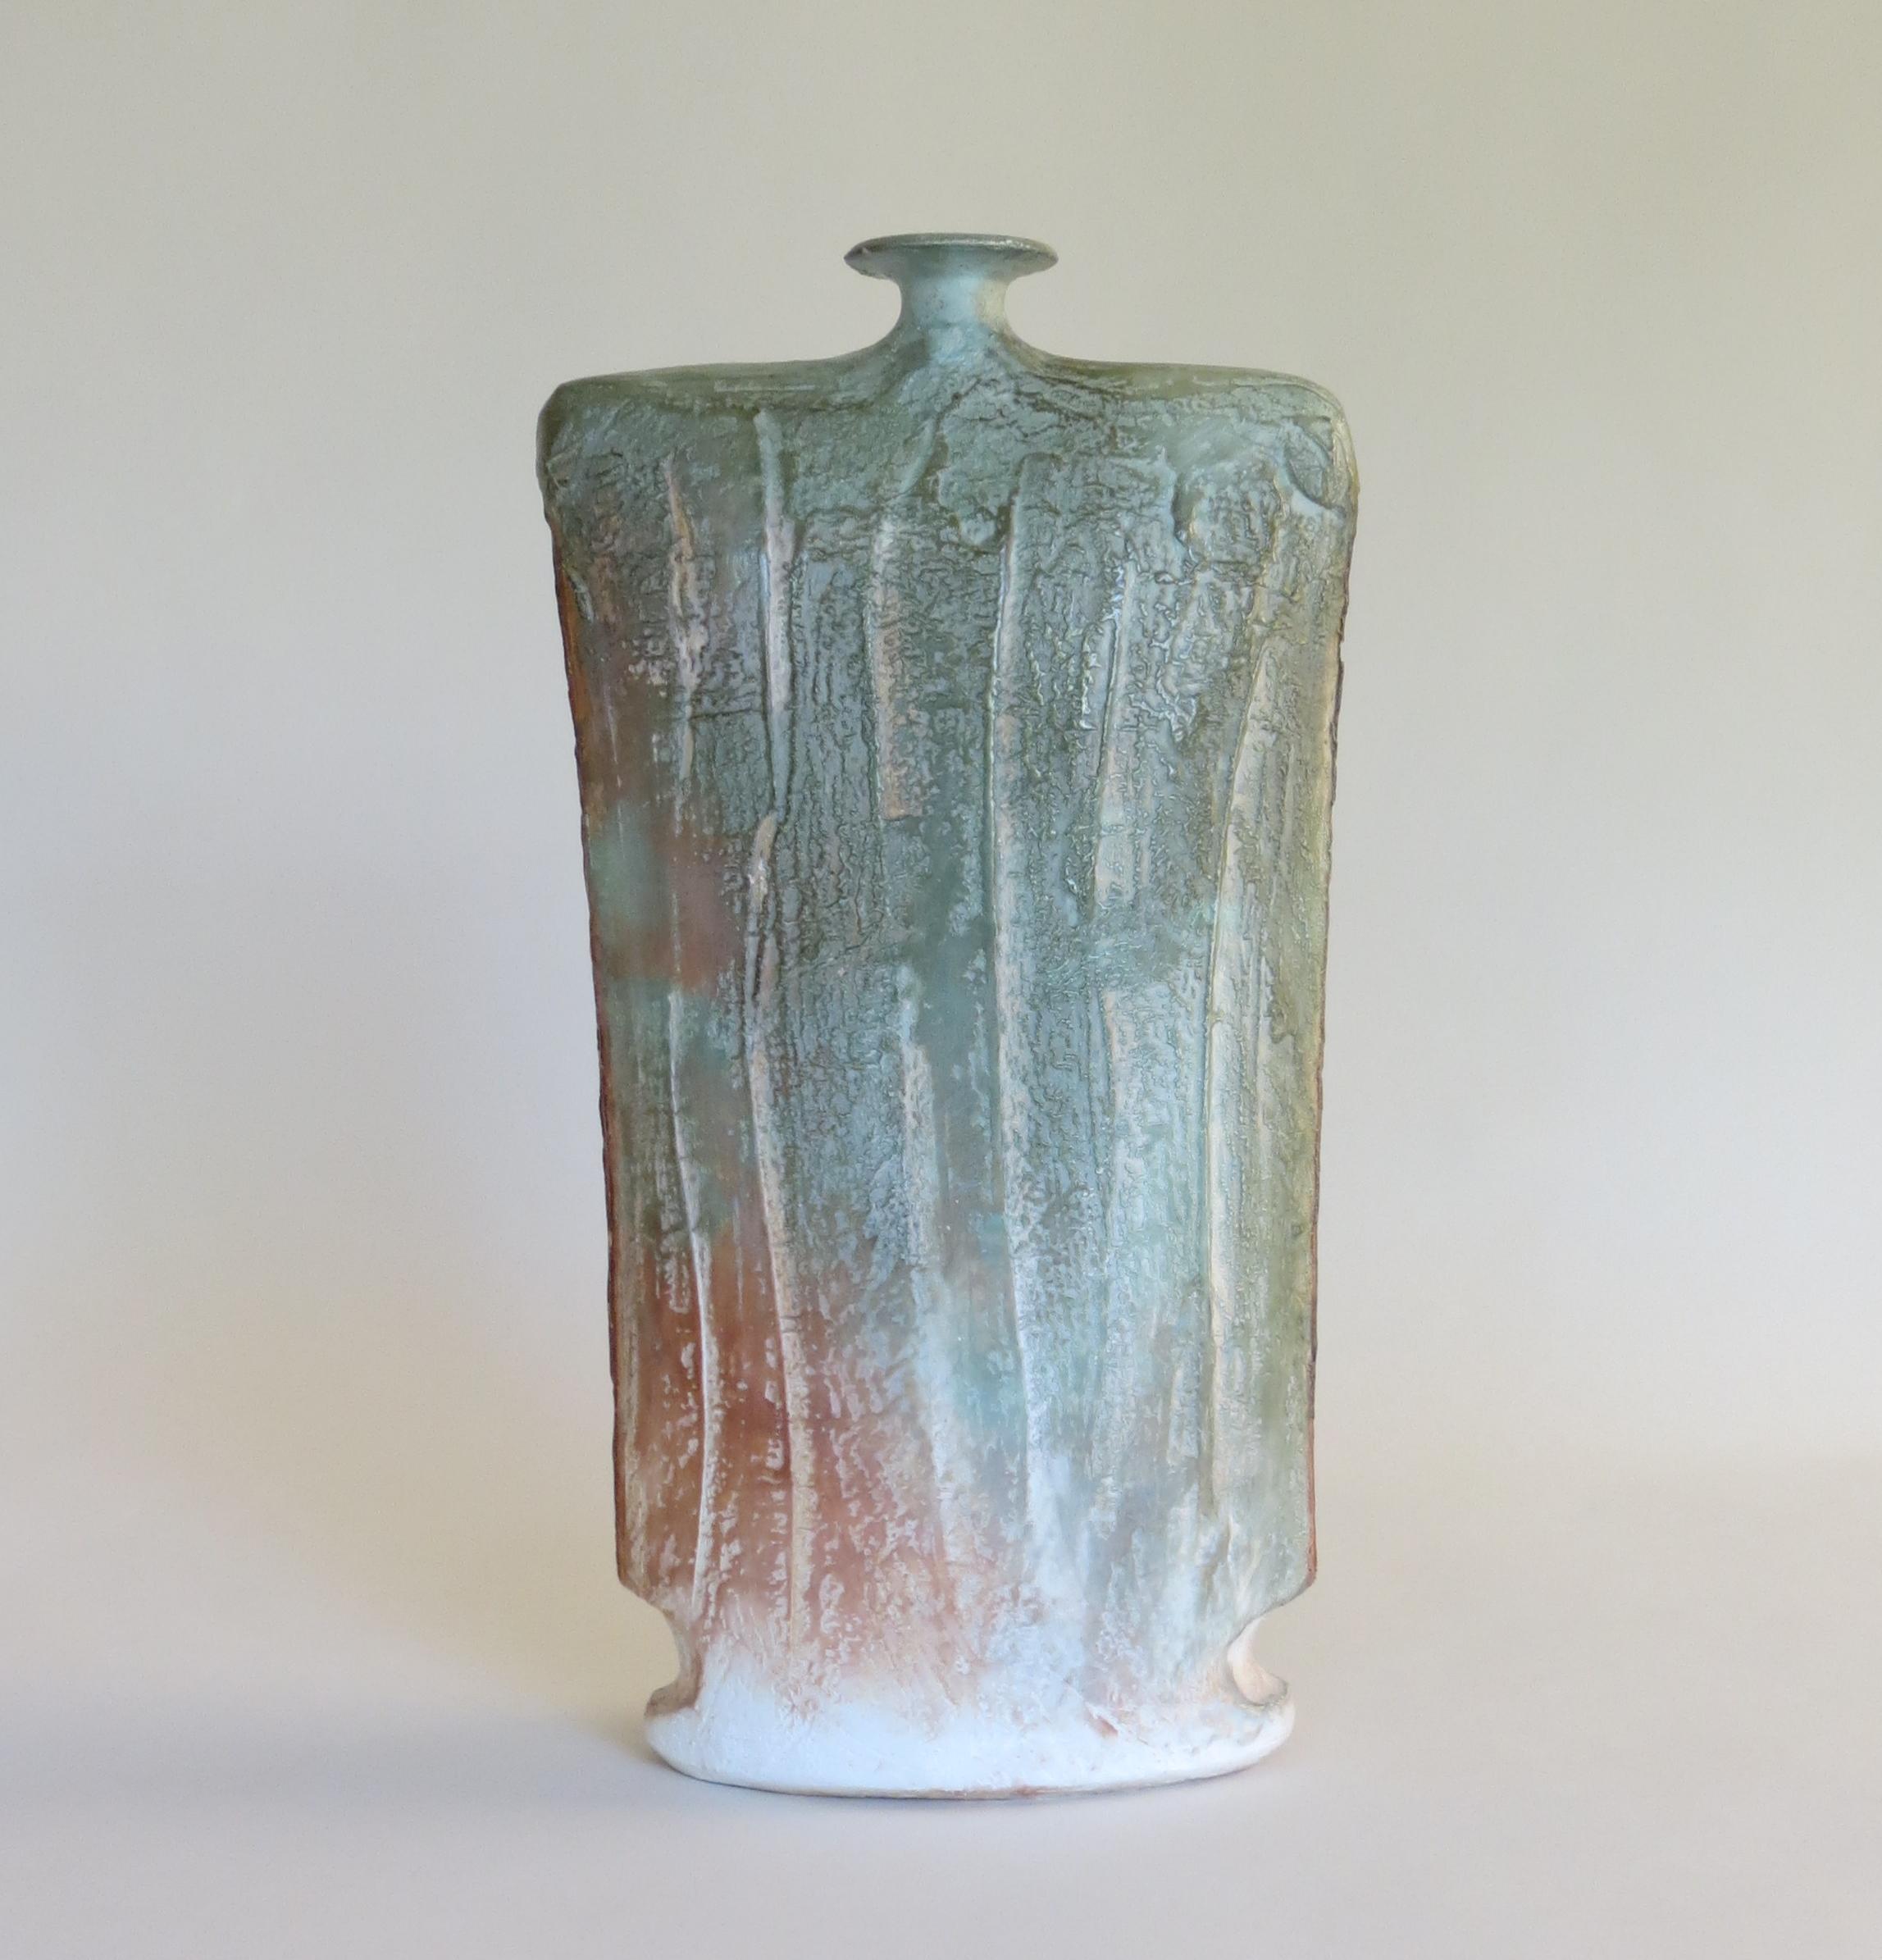 Vase en poterie de studio fait à la main en bon état. Cette pièce date des années 1980 et est signée par l'artiste John Bedding, basé à Artistics.

En très bon état.